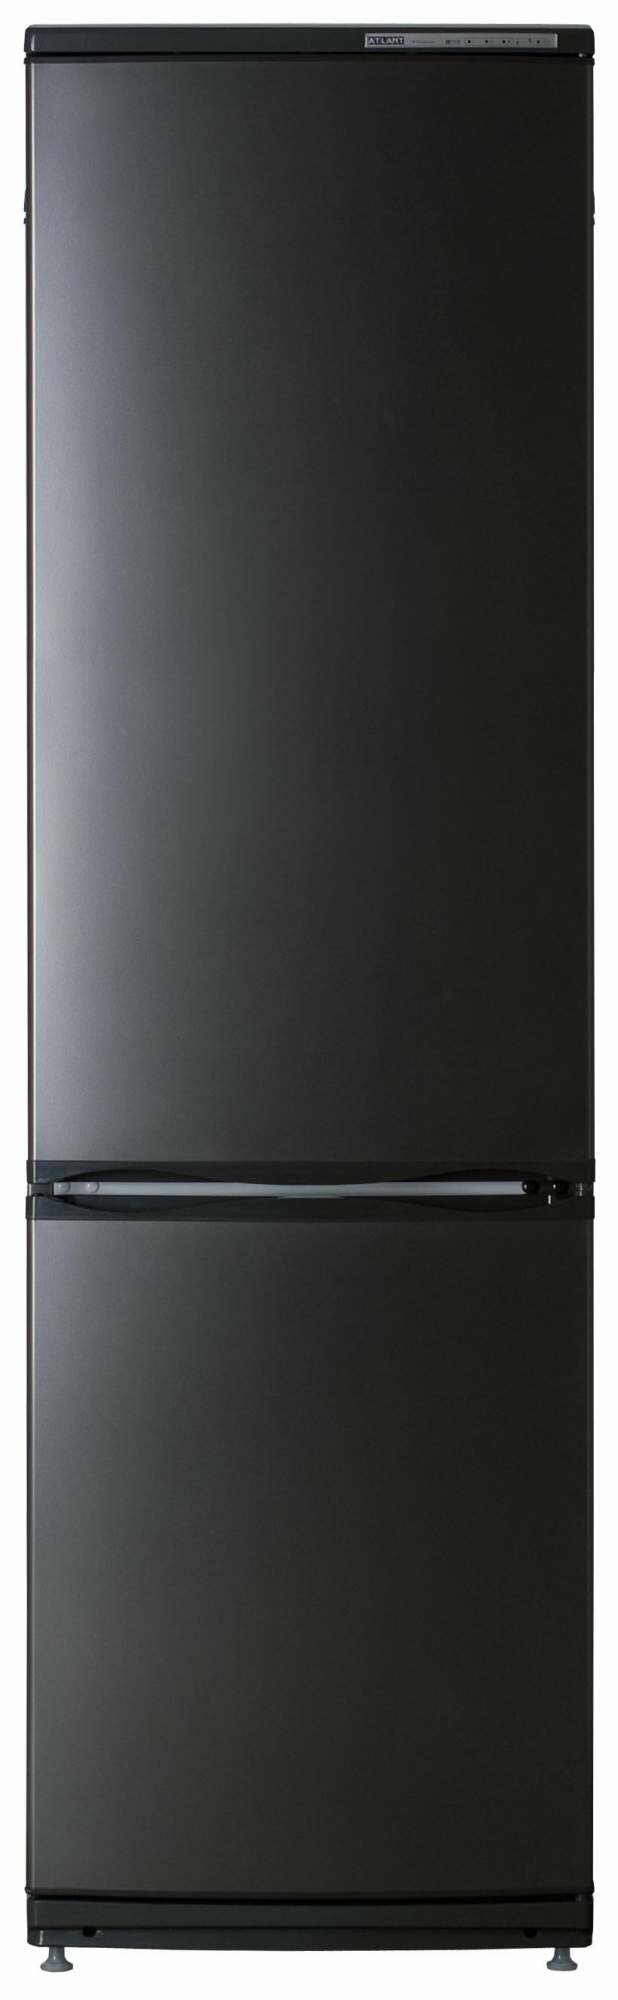 Холодильник ATLANT ХМ 6025-060 Black